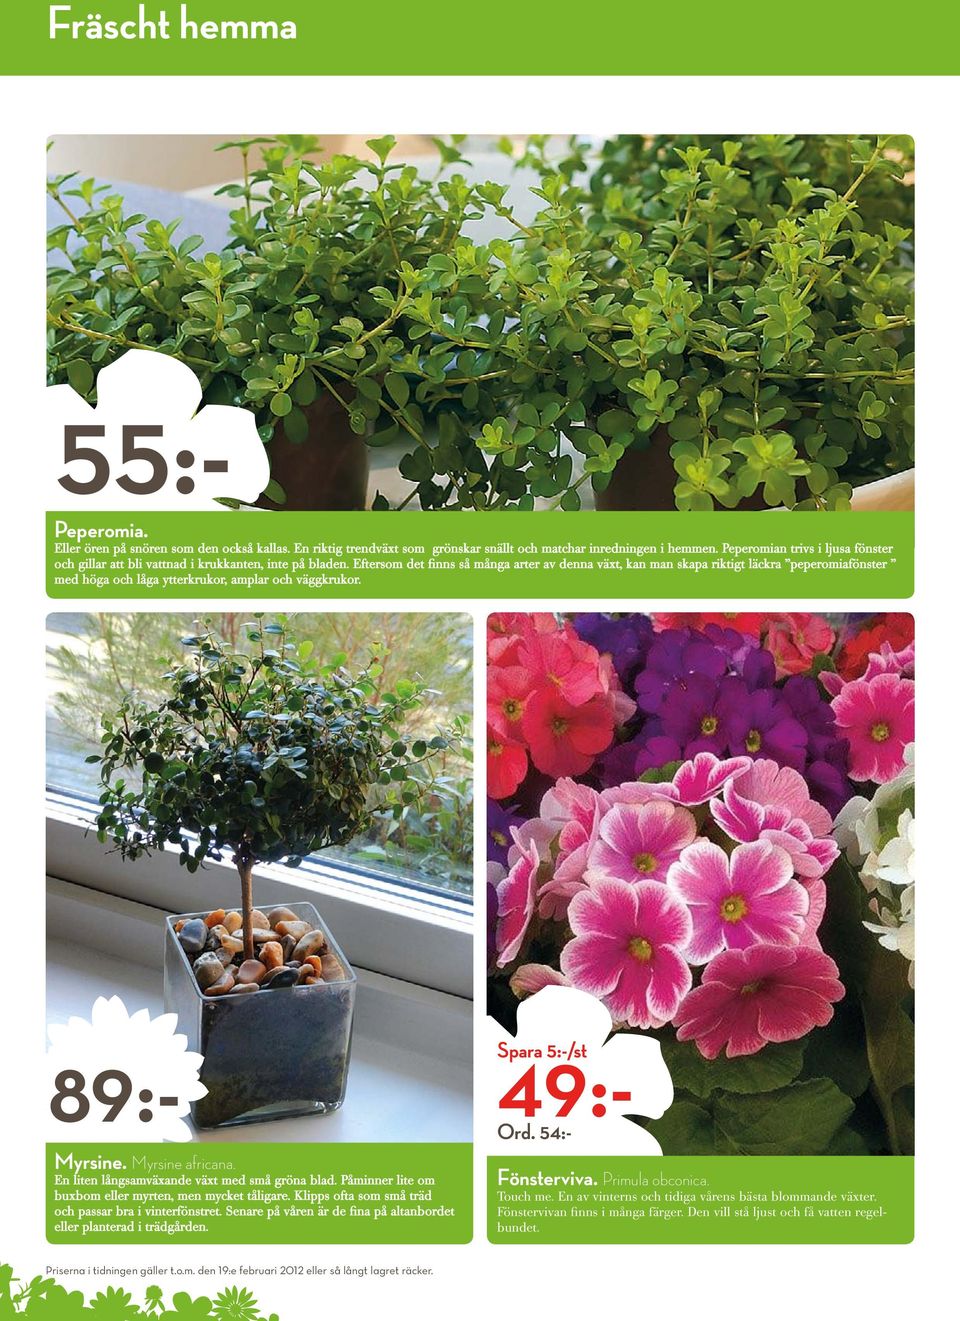 Eftersom det finns så många arter av denna växt, kan man skapa riktigt läckra peperomiafönster med höga och låga ytterkrukor, amplar och väggkrukor. 49:- Spara 5:-/st Ord. 54:- 89:- Myrsine.